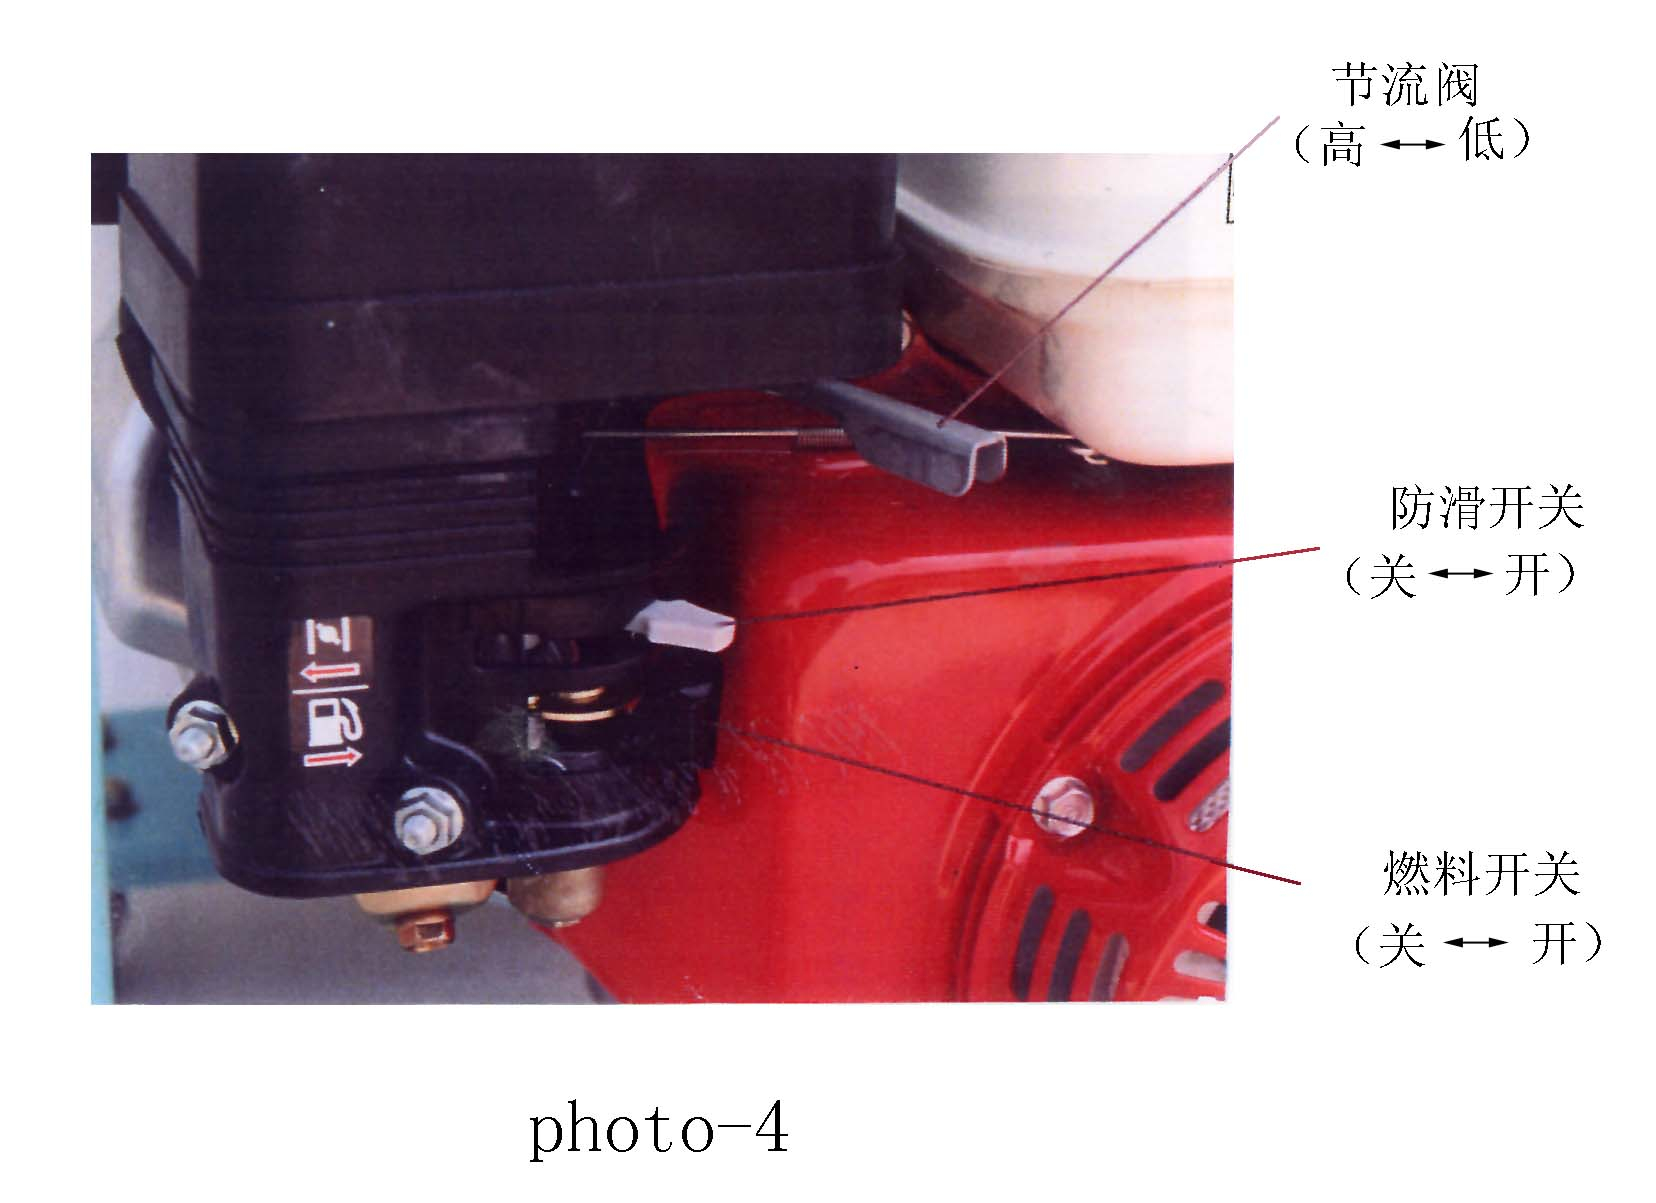 汽油机液压泵SEP5说明书